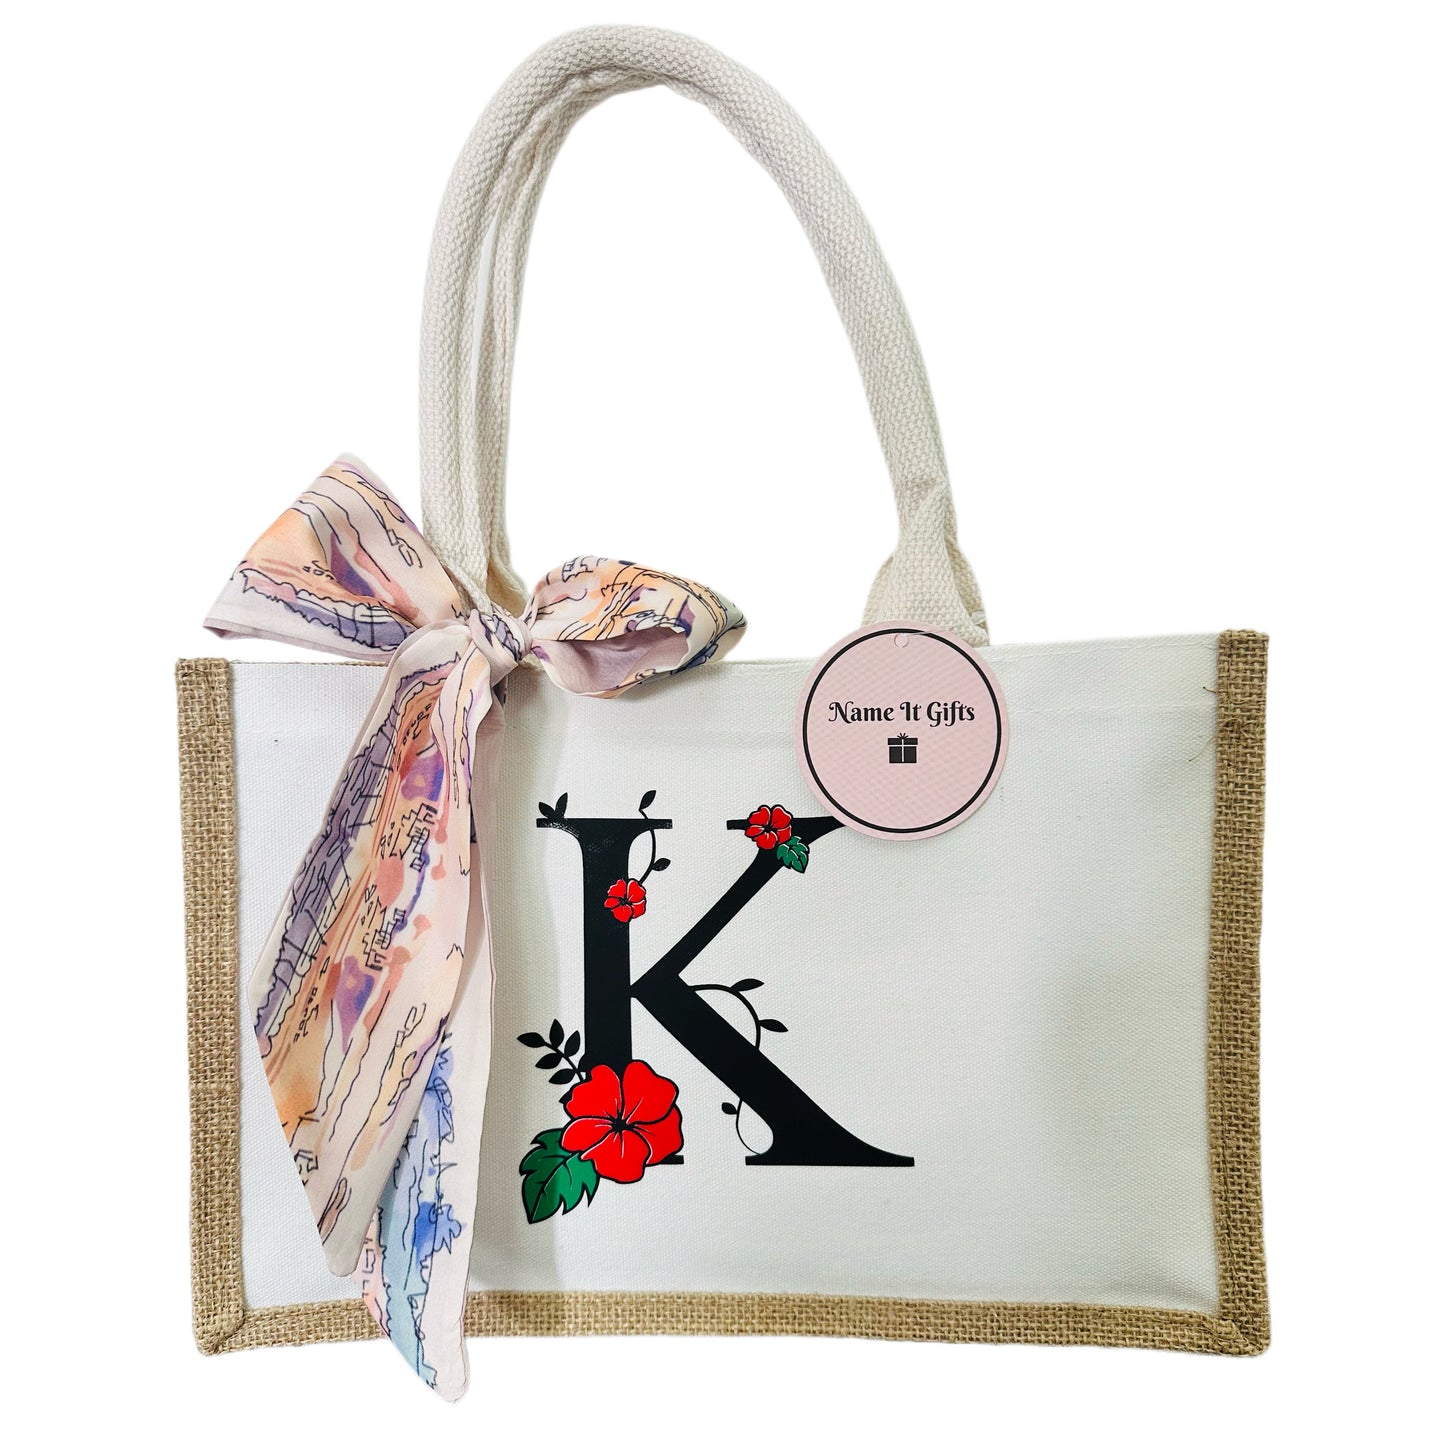 Personalised flower monogram tote bag